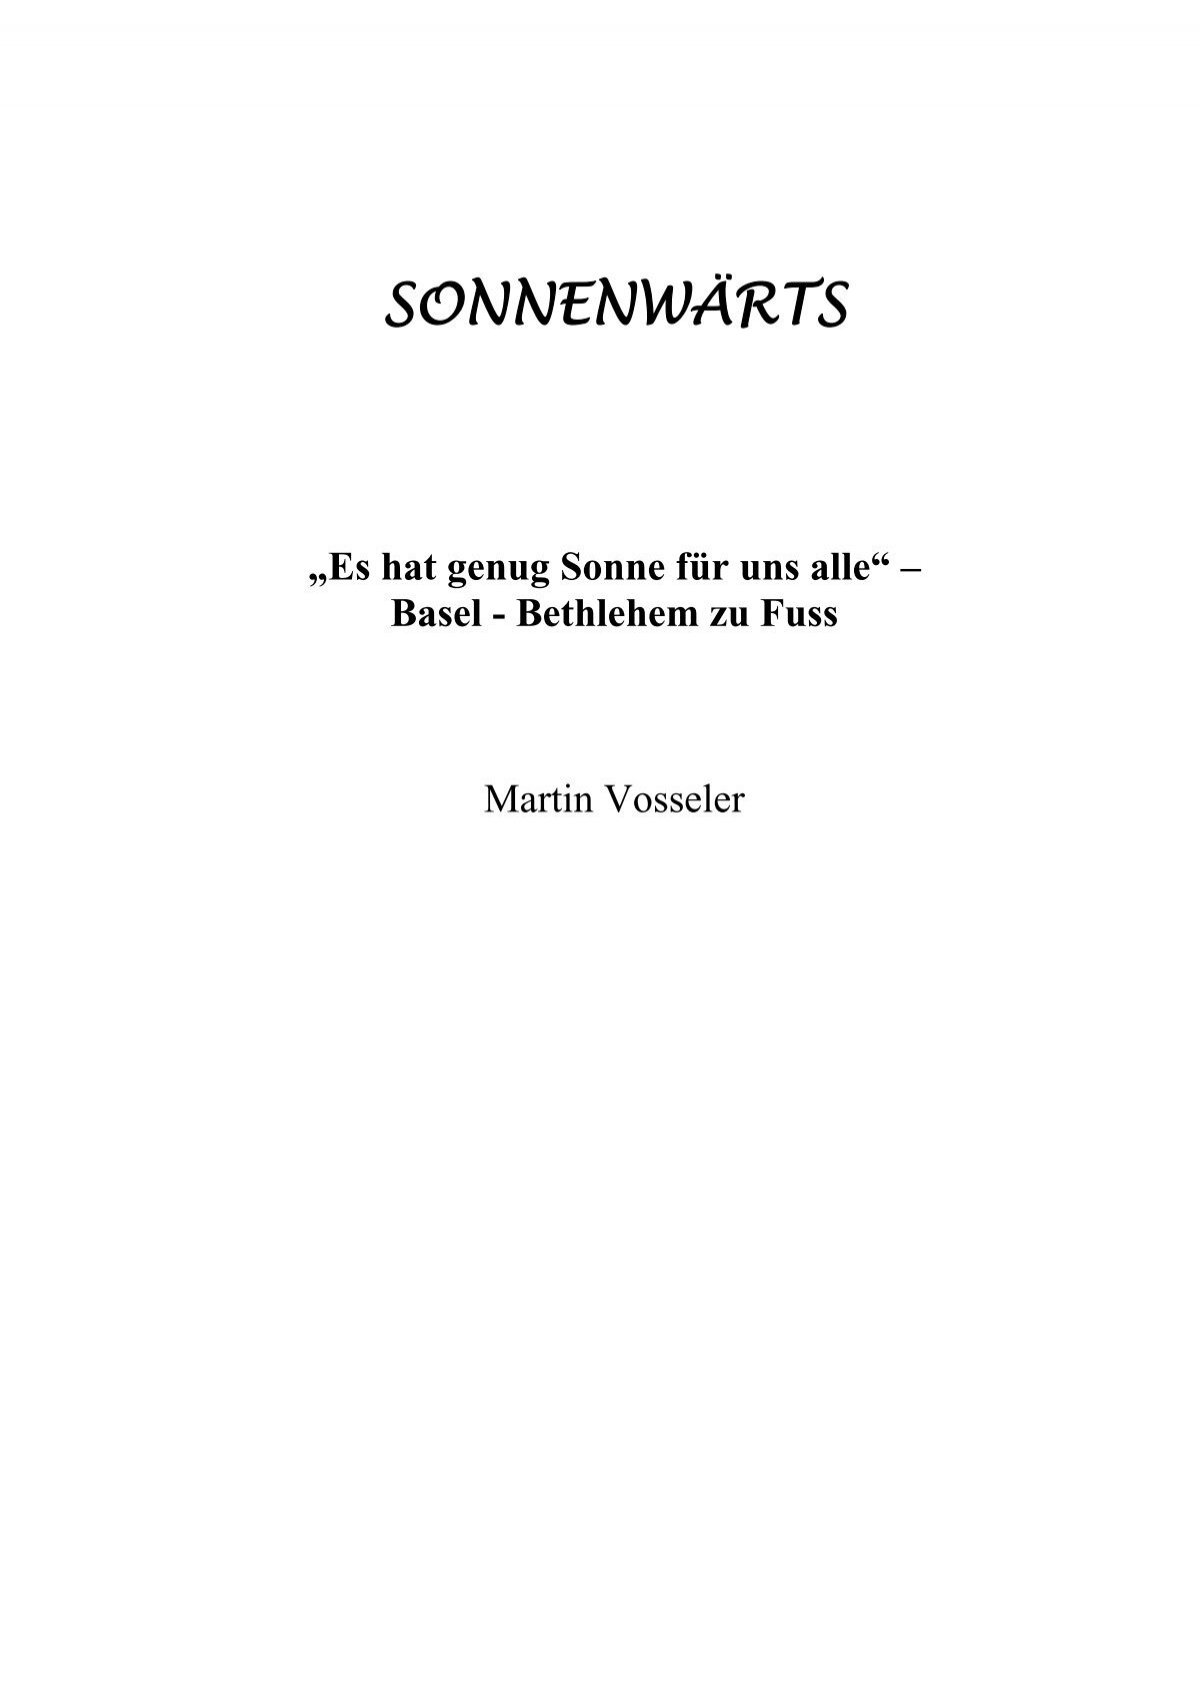 SONNENWÄRTS „Es hat genug Sonne für uns alle“ - Martin Vosseler